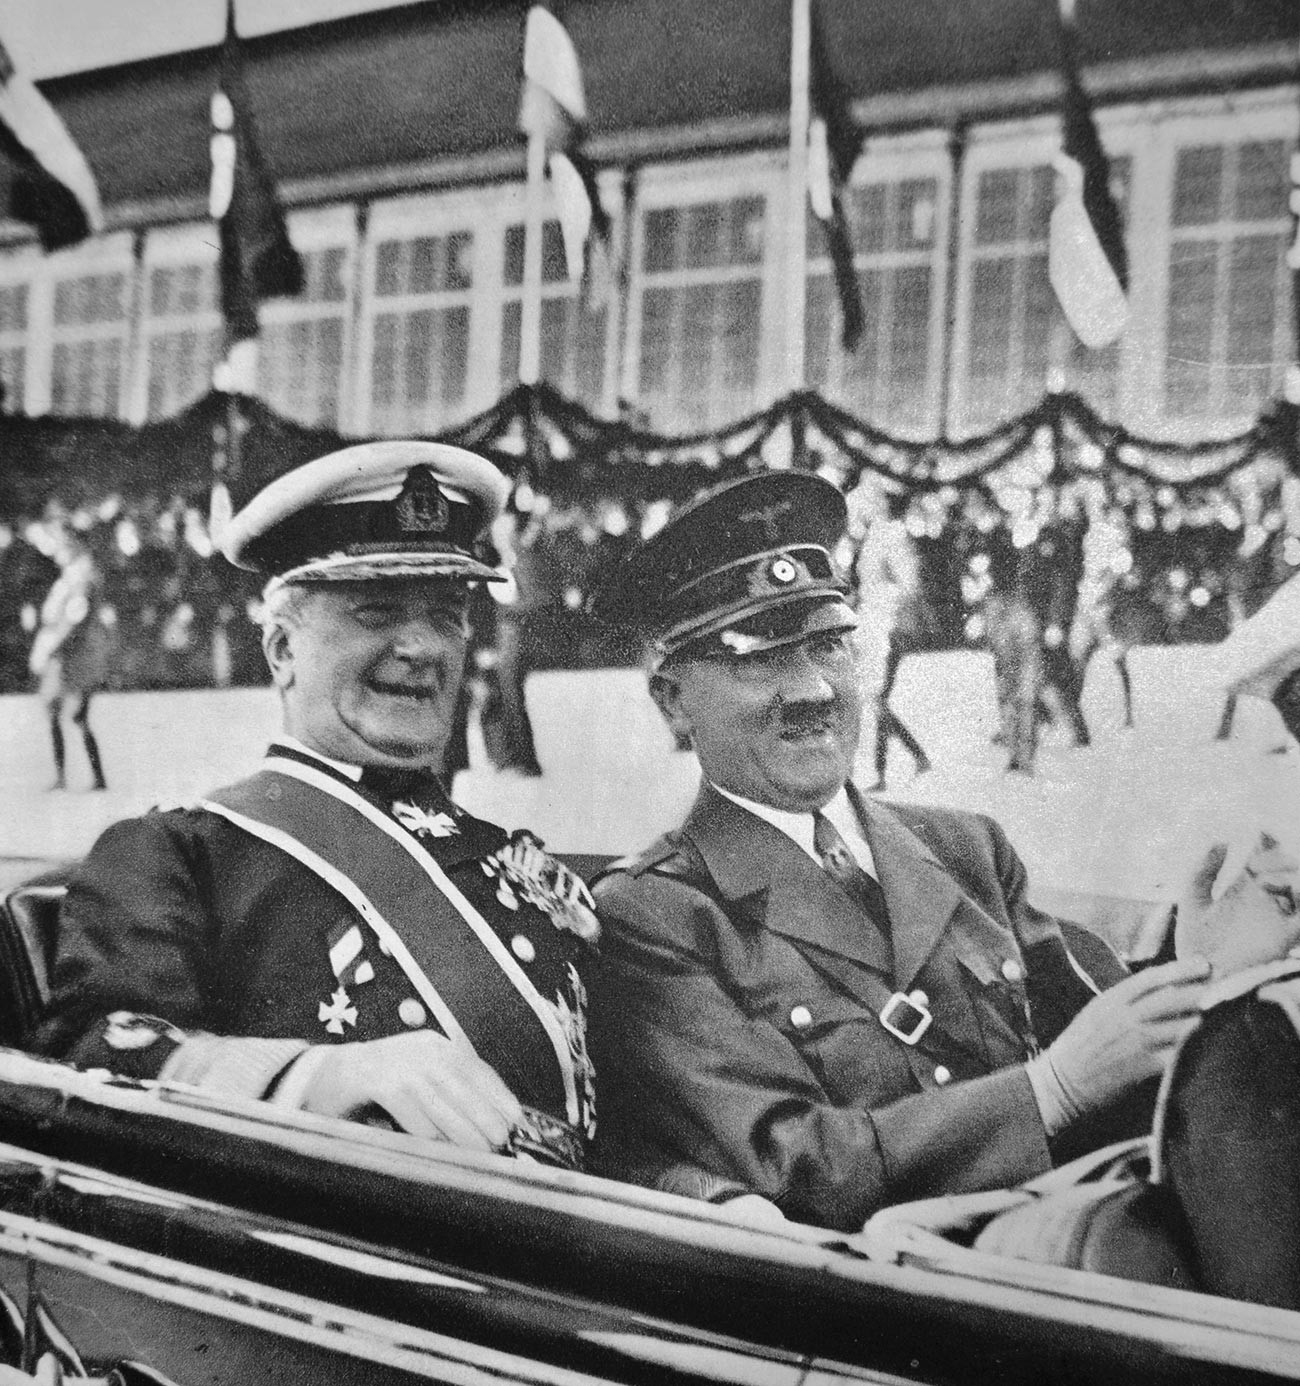 Mađarski lider Miklós Horthy i Adolf Hitler, 1938.

